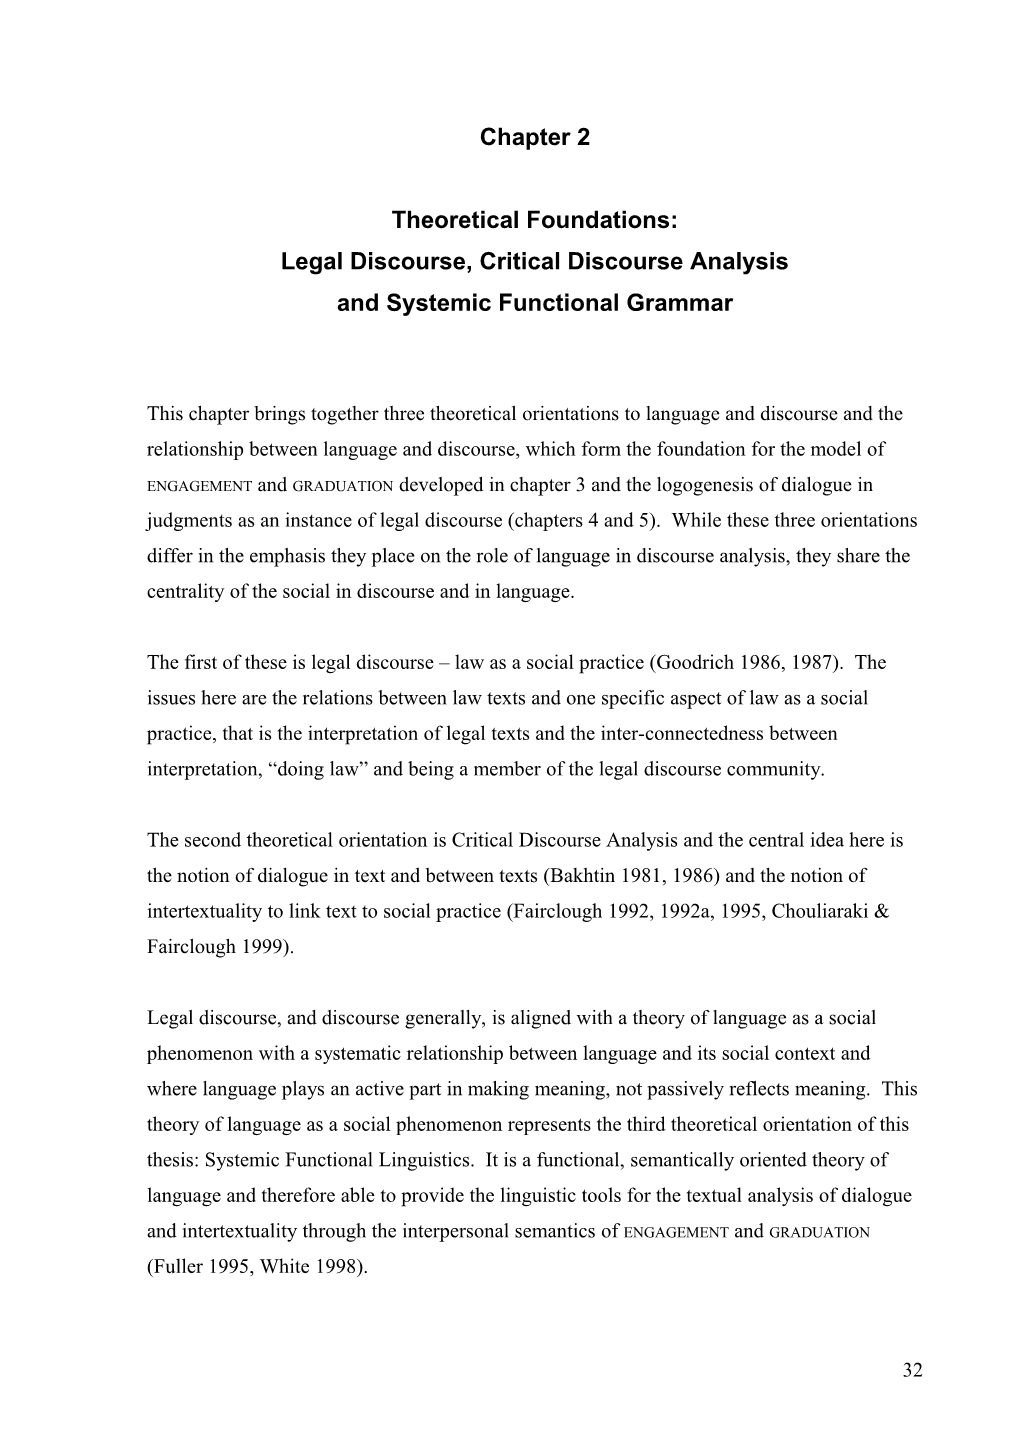 Legal Discourse, Critical Discourse Analysis